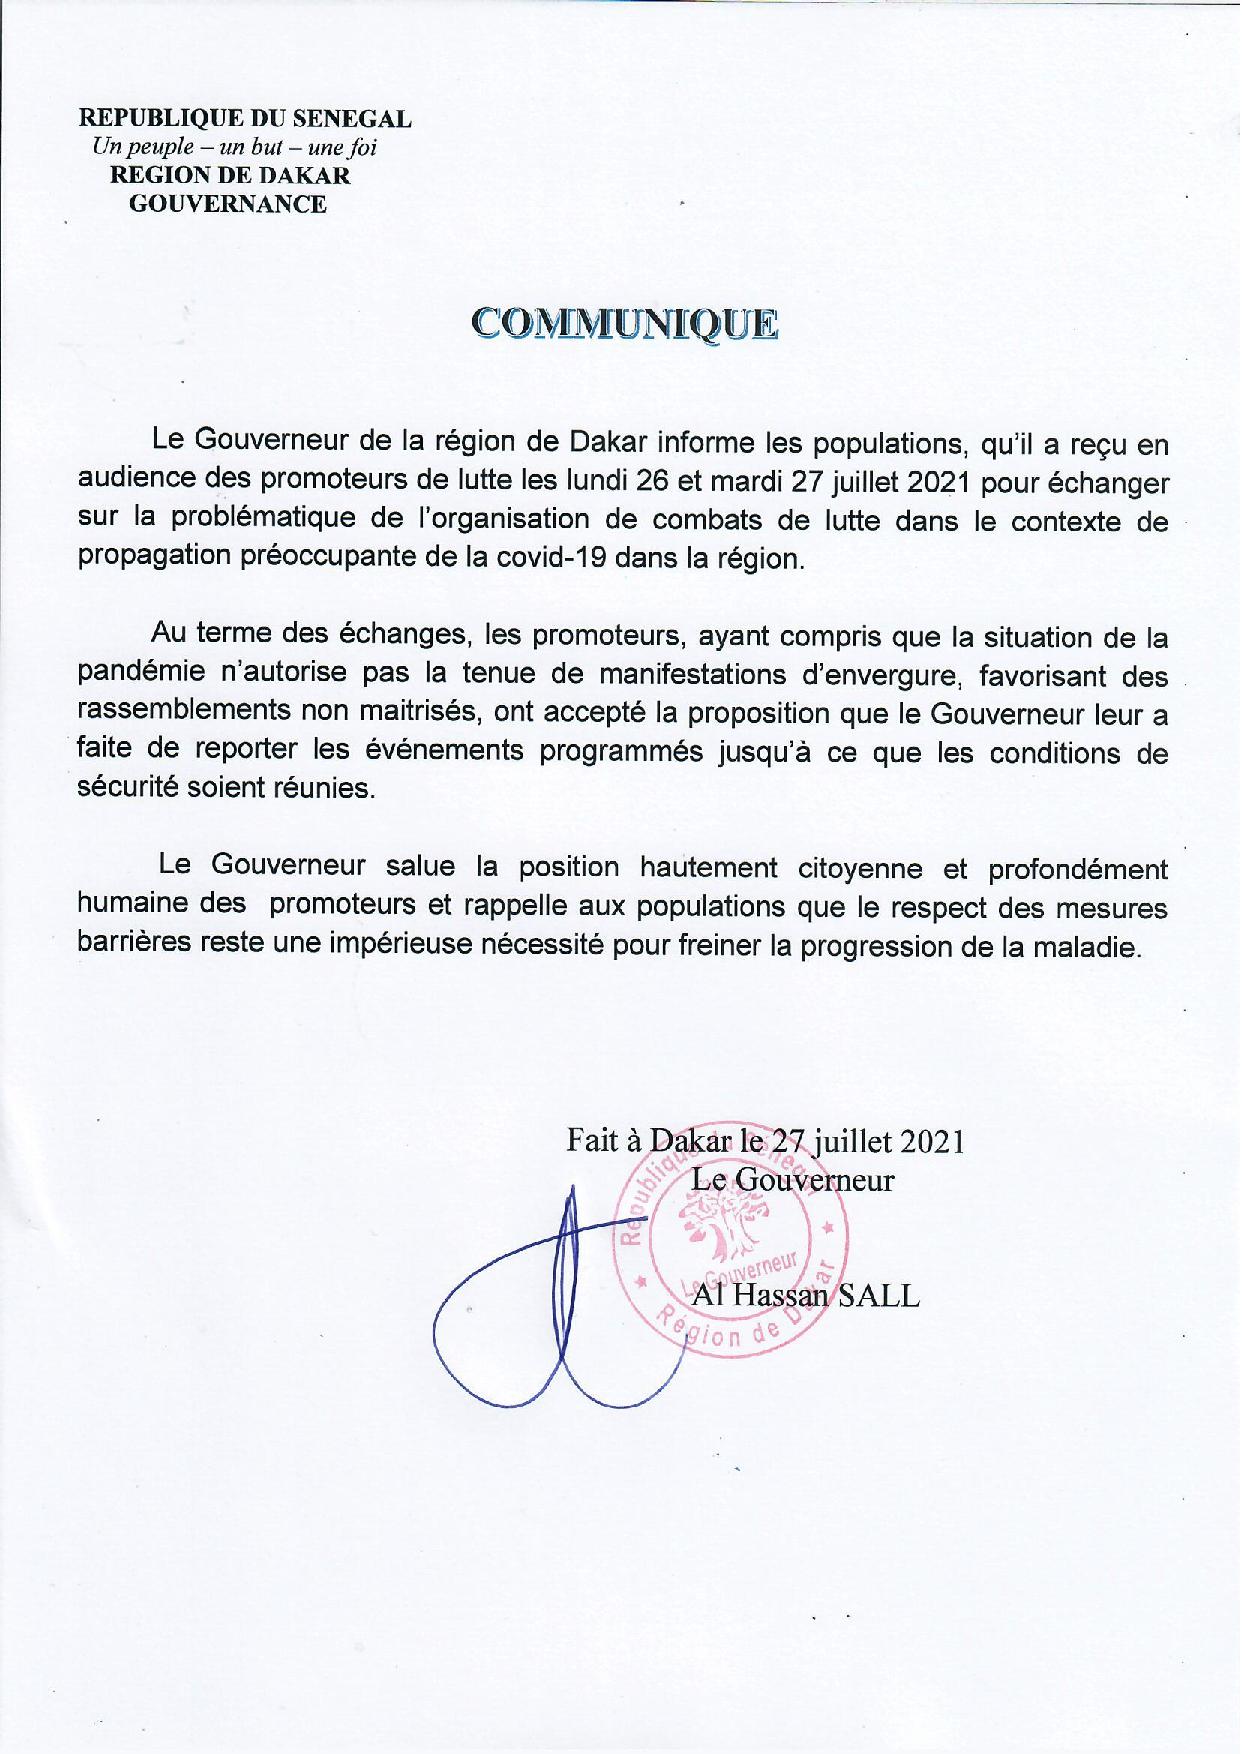 Le Gouverneur de Dakar prend ses responsabilités et annule tous les combats de lutte